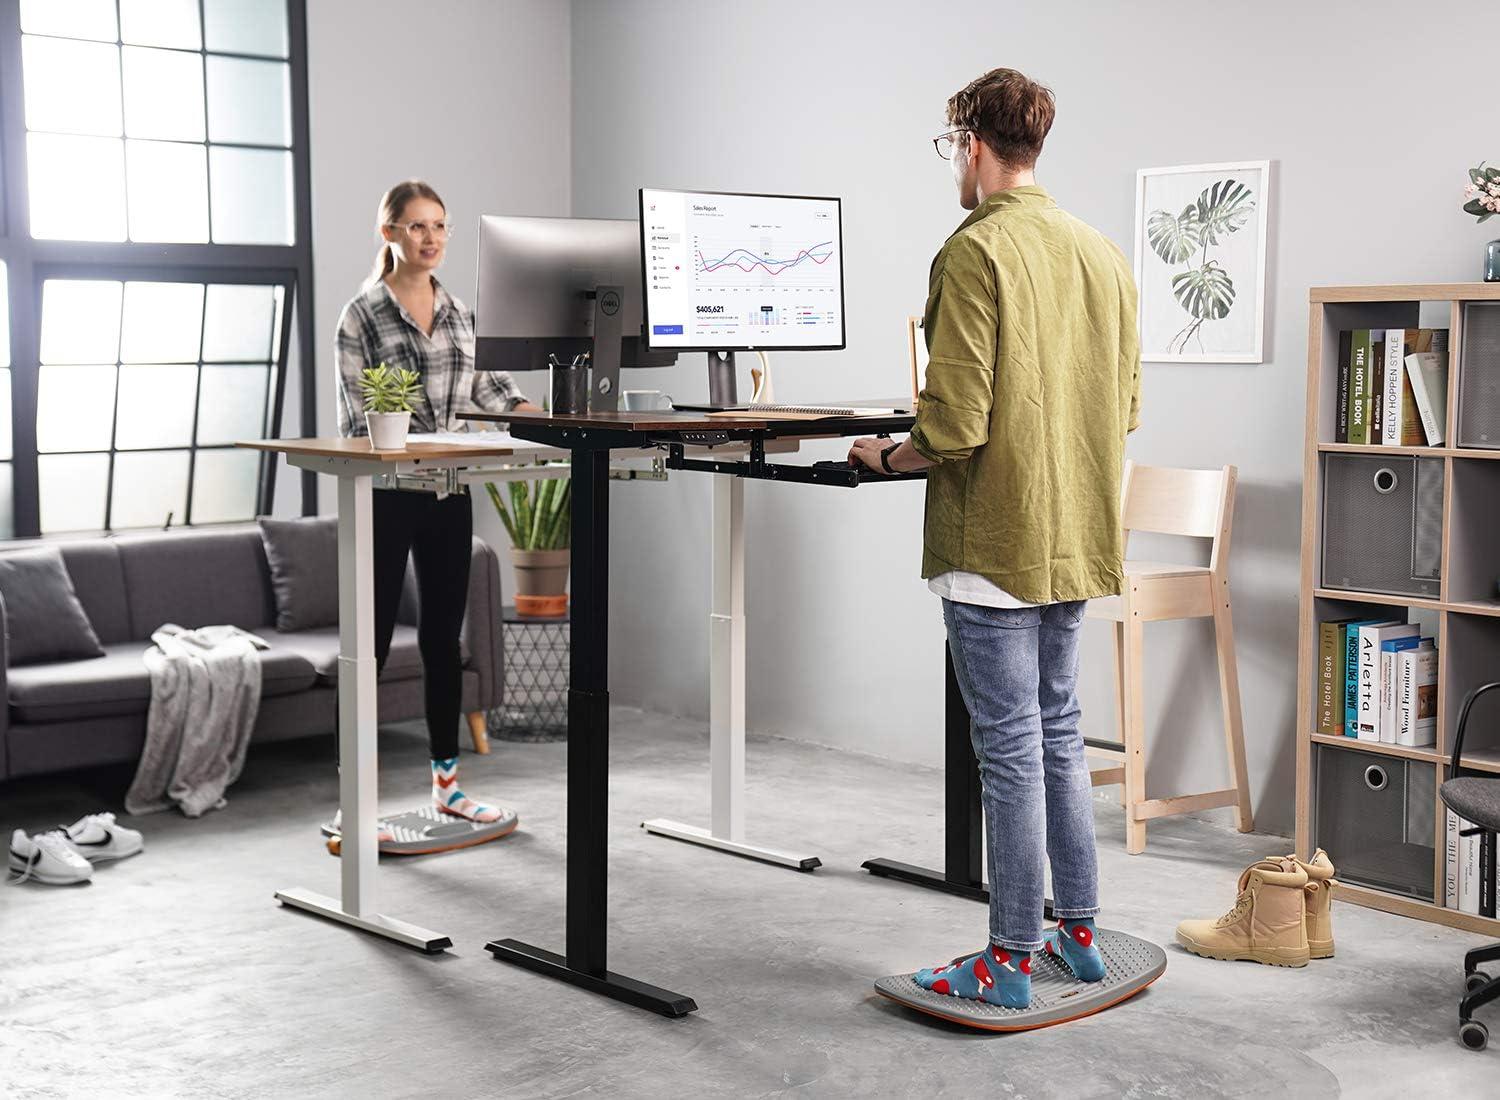 FEZIBO Standing Desk Anti Fatigue Mat with Ergonomic Design Comfort Floor  Mat